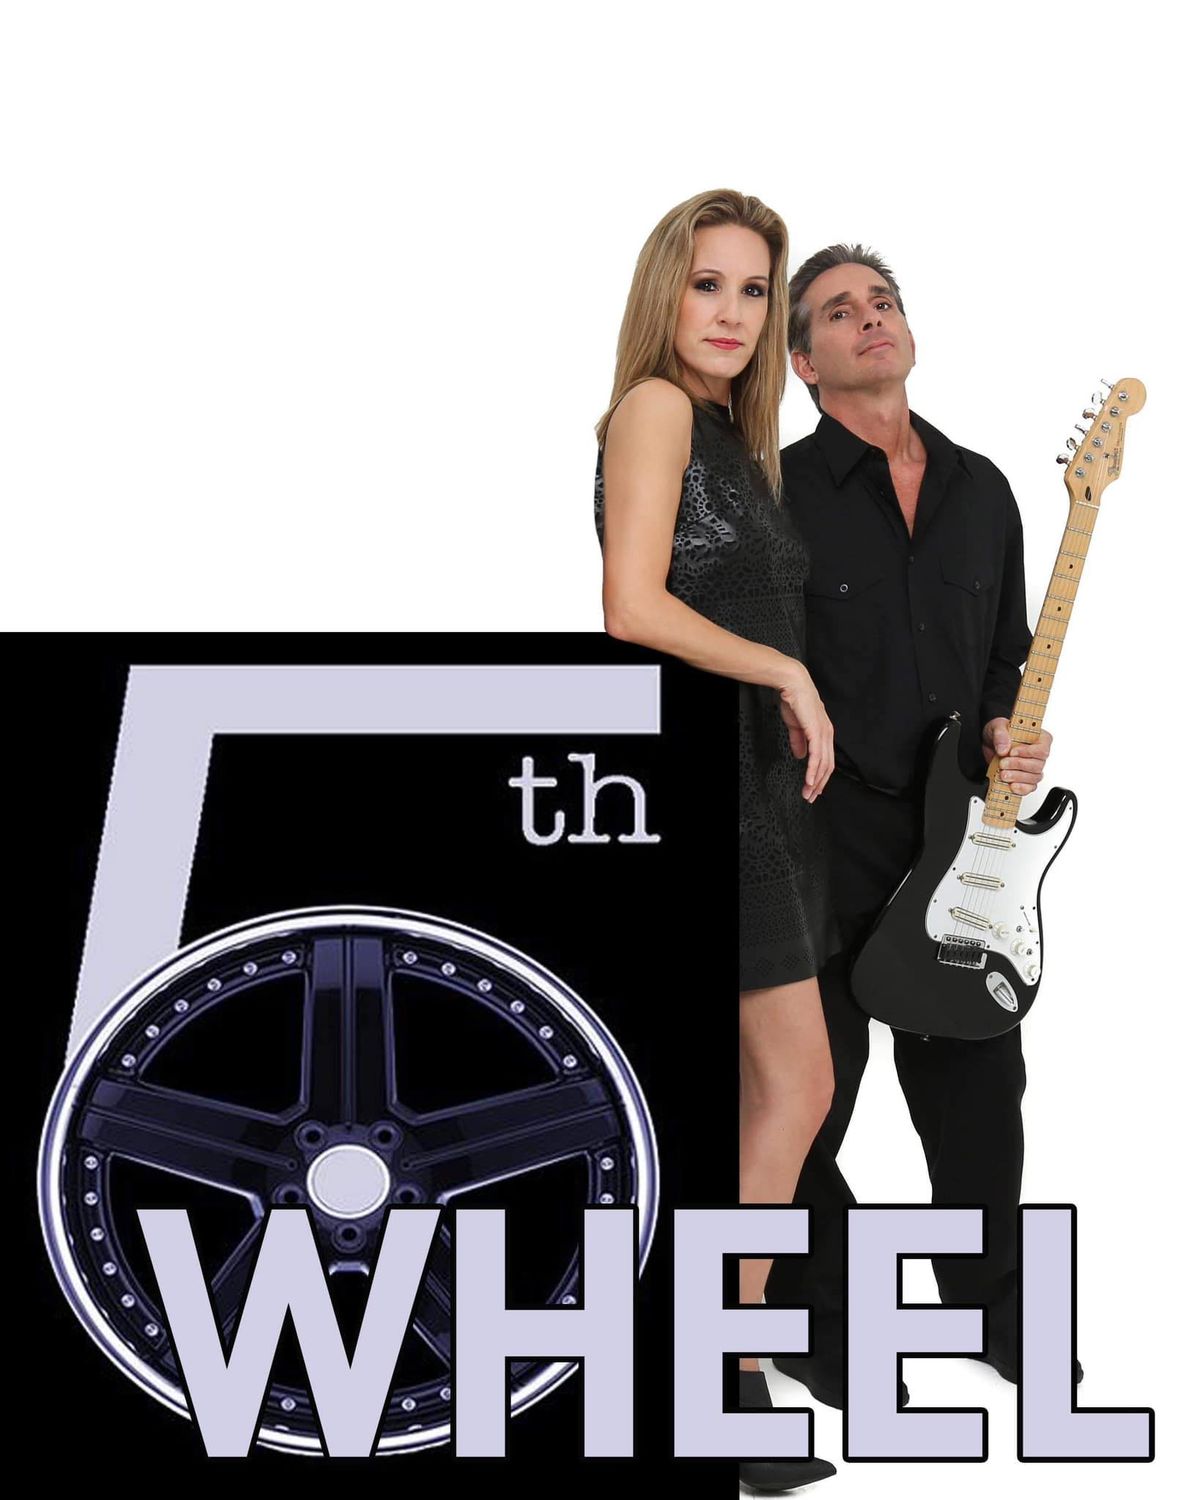 Fifth Wheel'd Duo returns to Rock & Brews